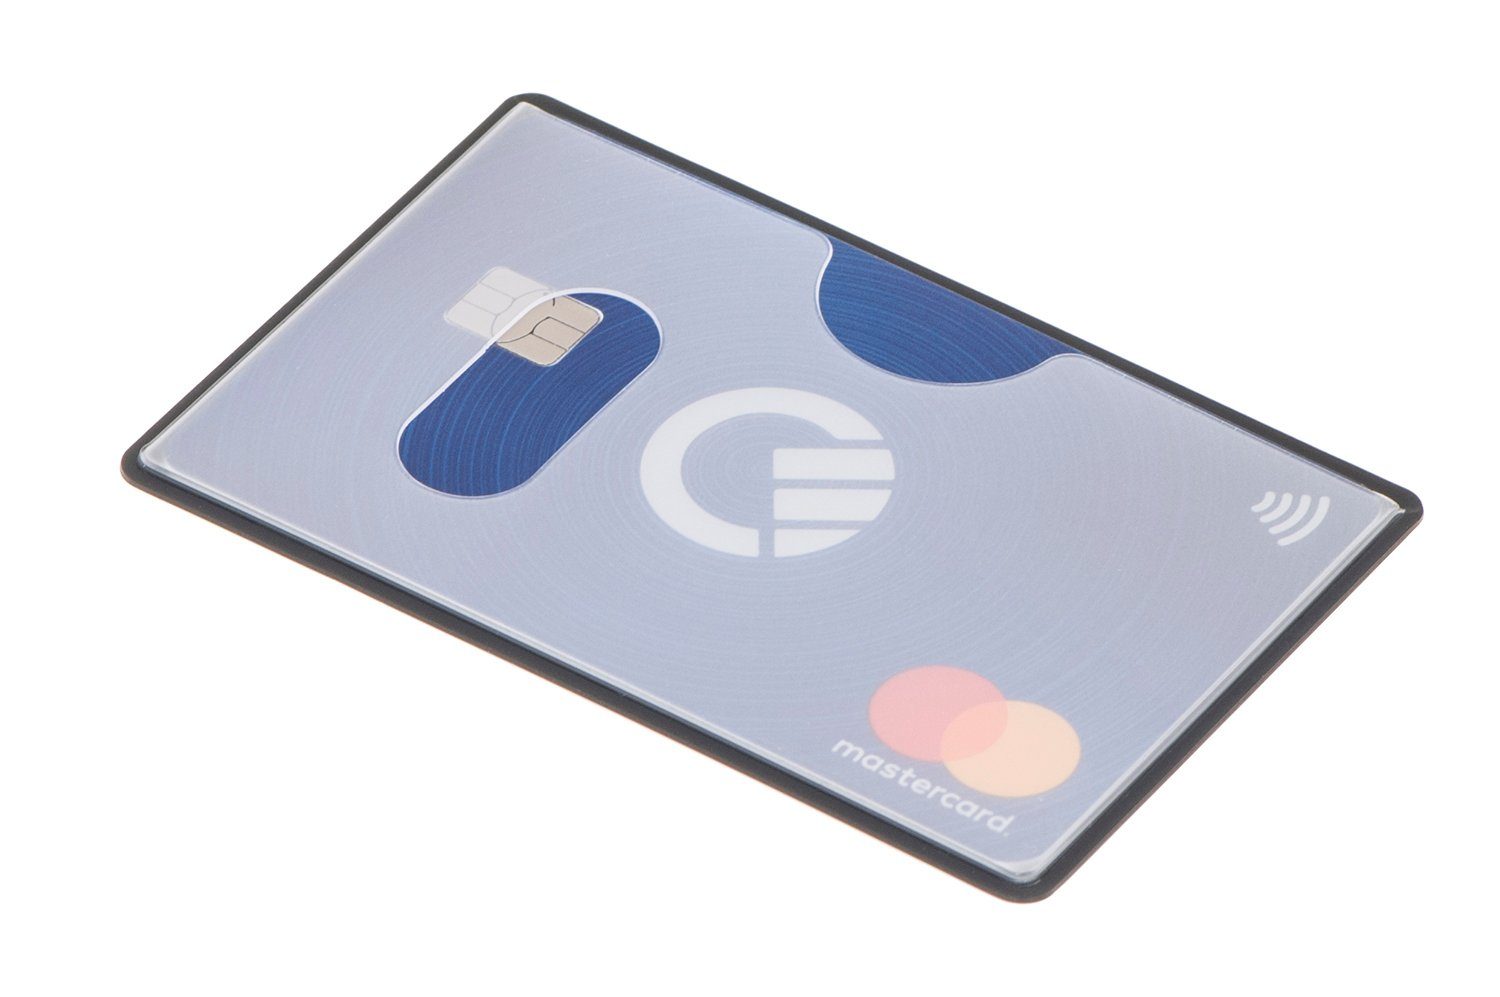 Etui Scheckkarte abgeschirmt, 91 mm, Schutz, Stück RFID - RFID-Block 59 NFZ valonic Einschub transparent, 6 Kreditkarte, valonic x Kreditkartenhüllen oben